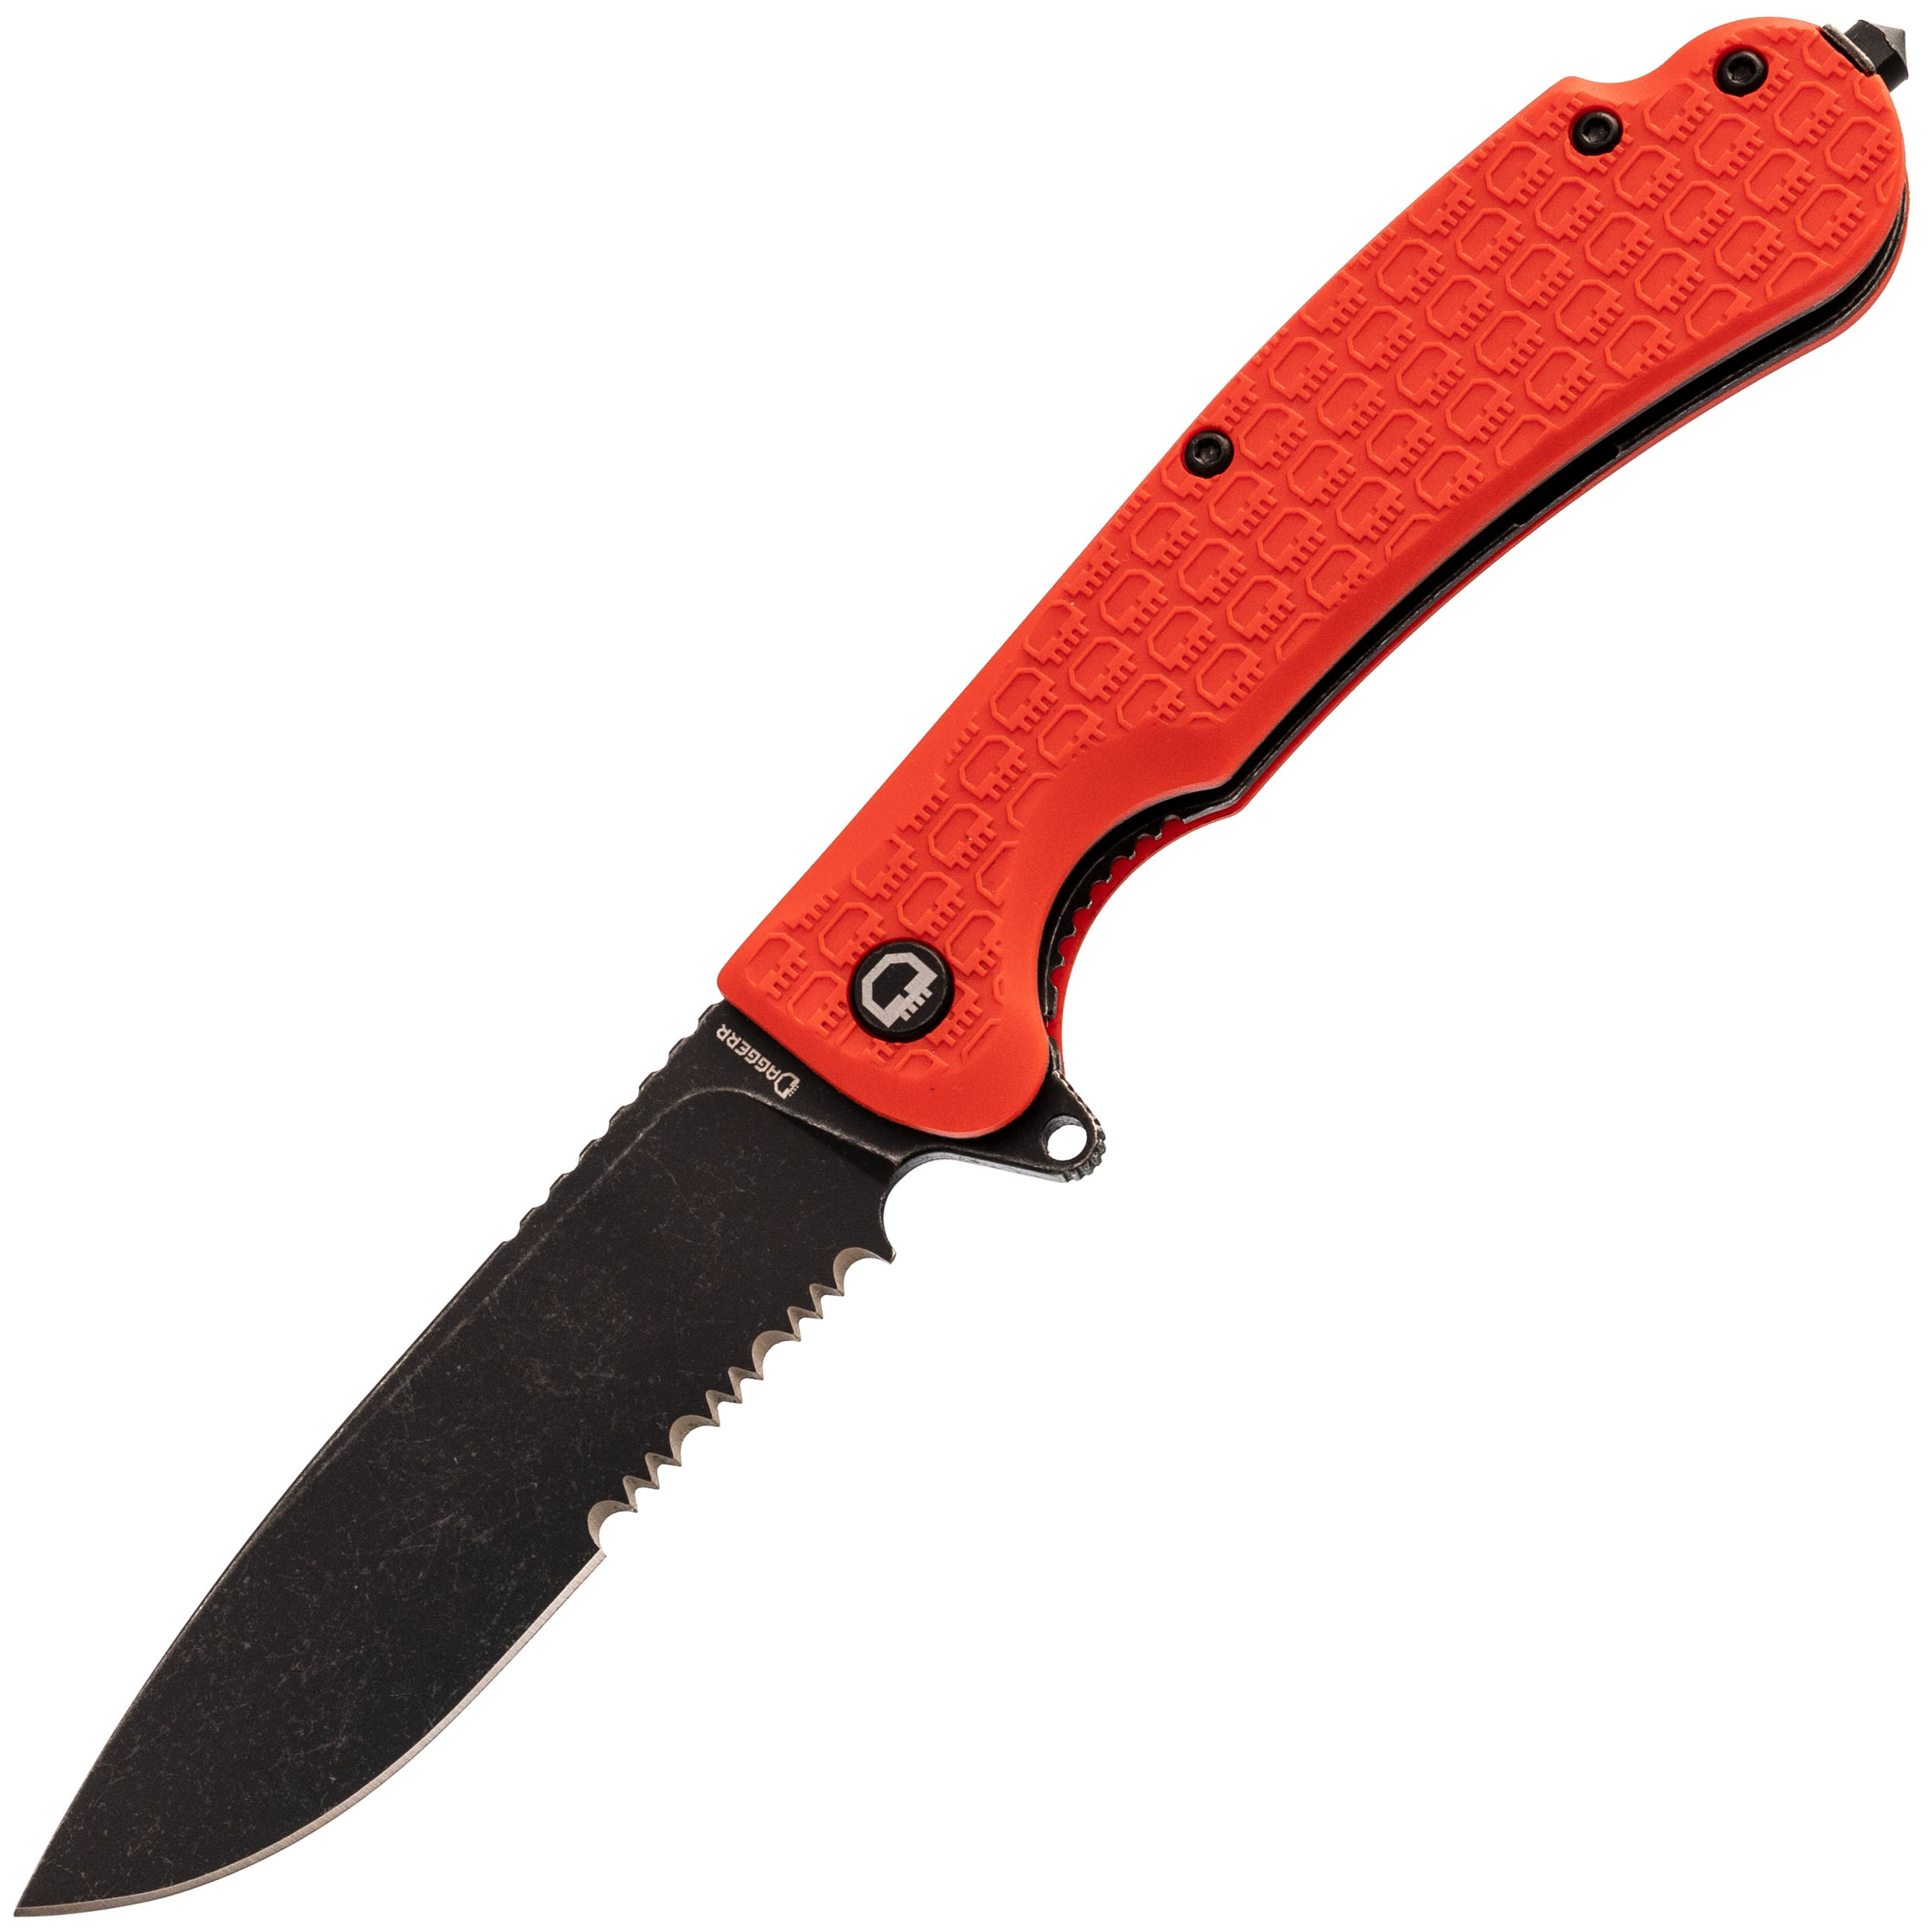 Складной нож Daggerr Wocket Orange BW Serrated, сталь 8Cr14MoV, рукоять FRN, Бренды, DAGGERR